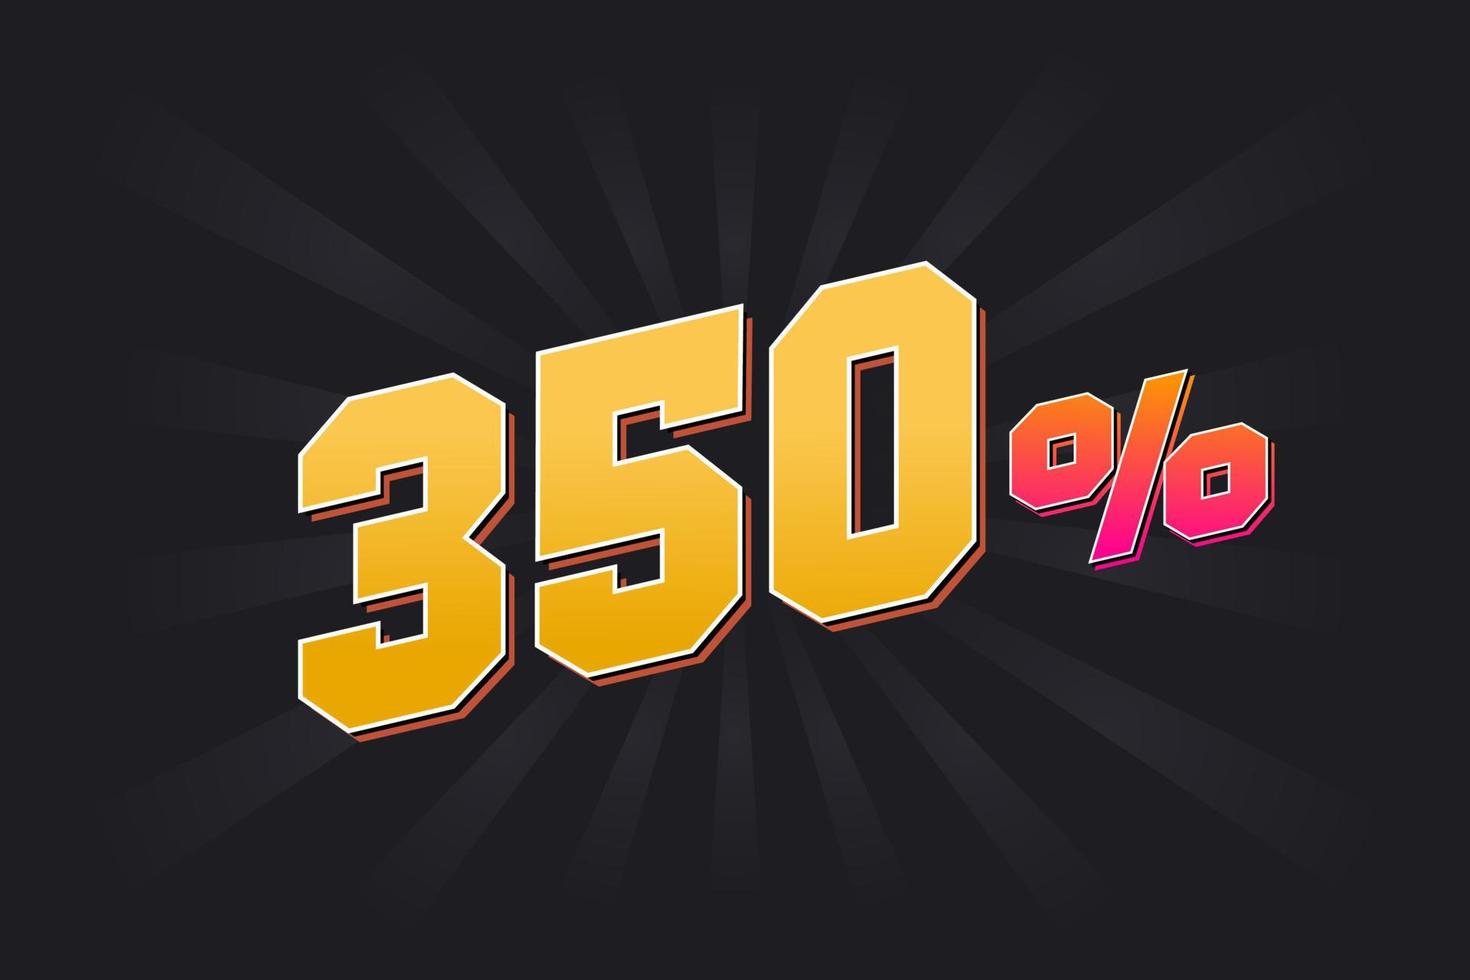 350 banner de descuento con fondo oscuro y texto amarillo. 350 por ciento de diseño promocional de ventas. vector